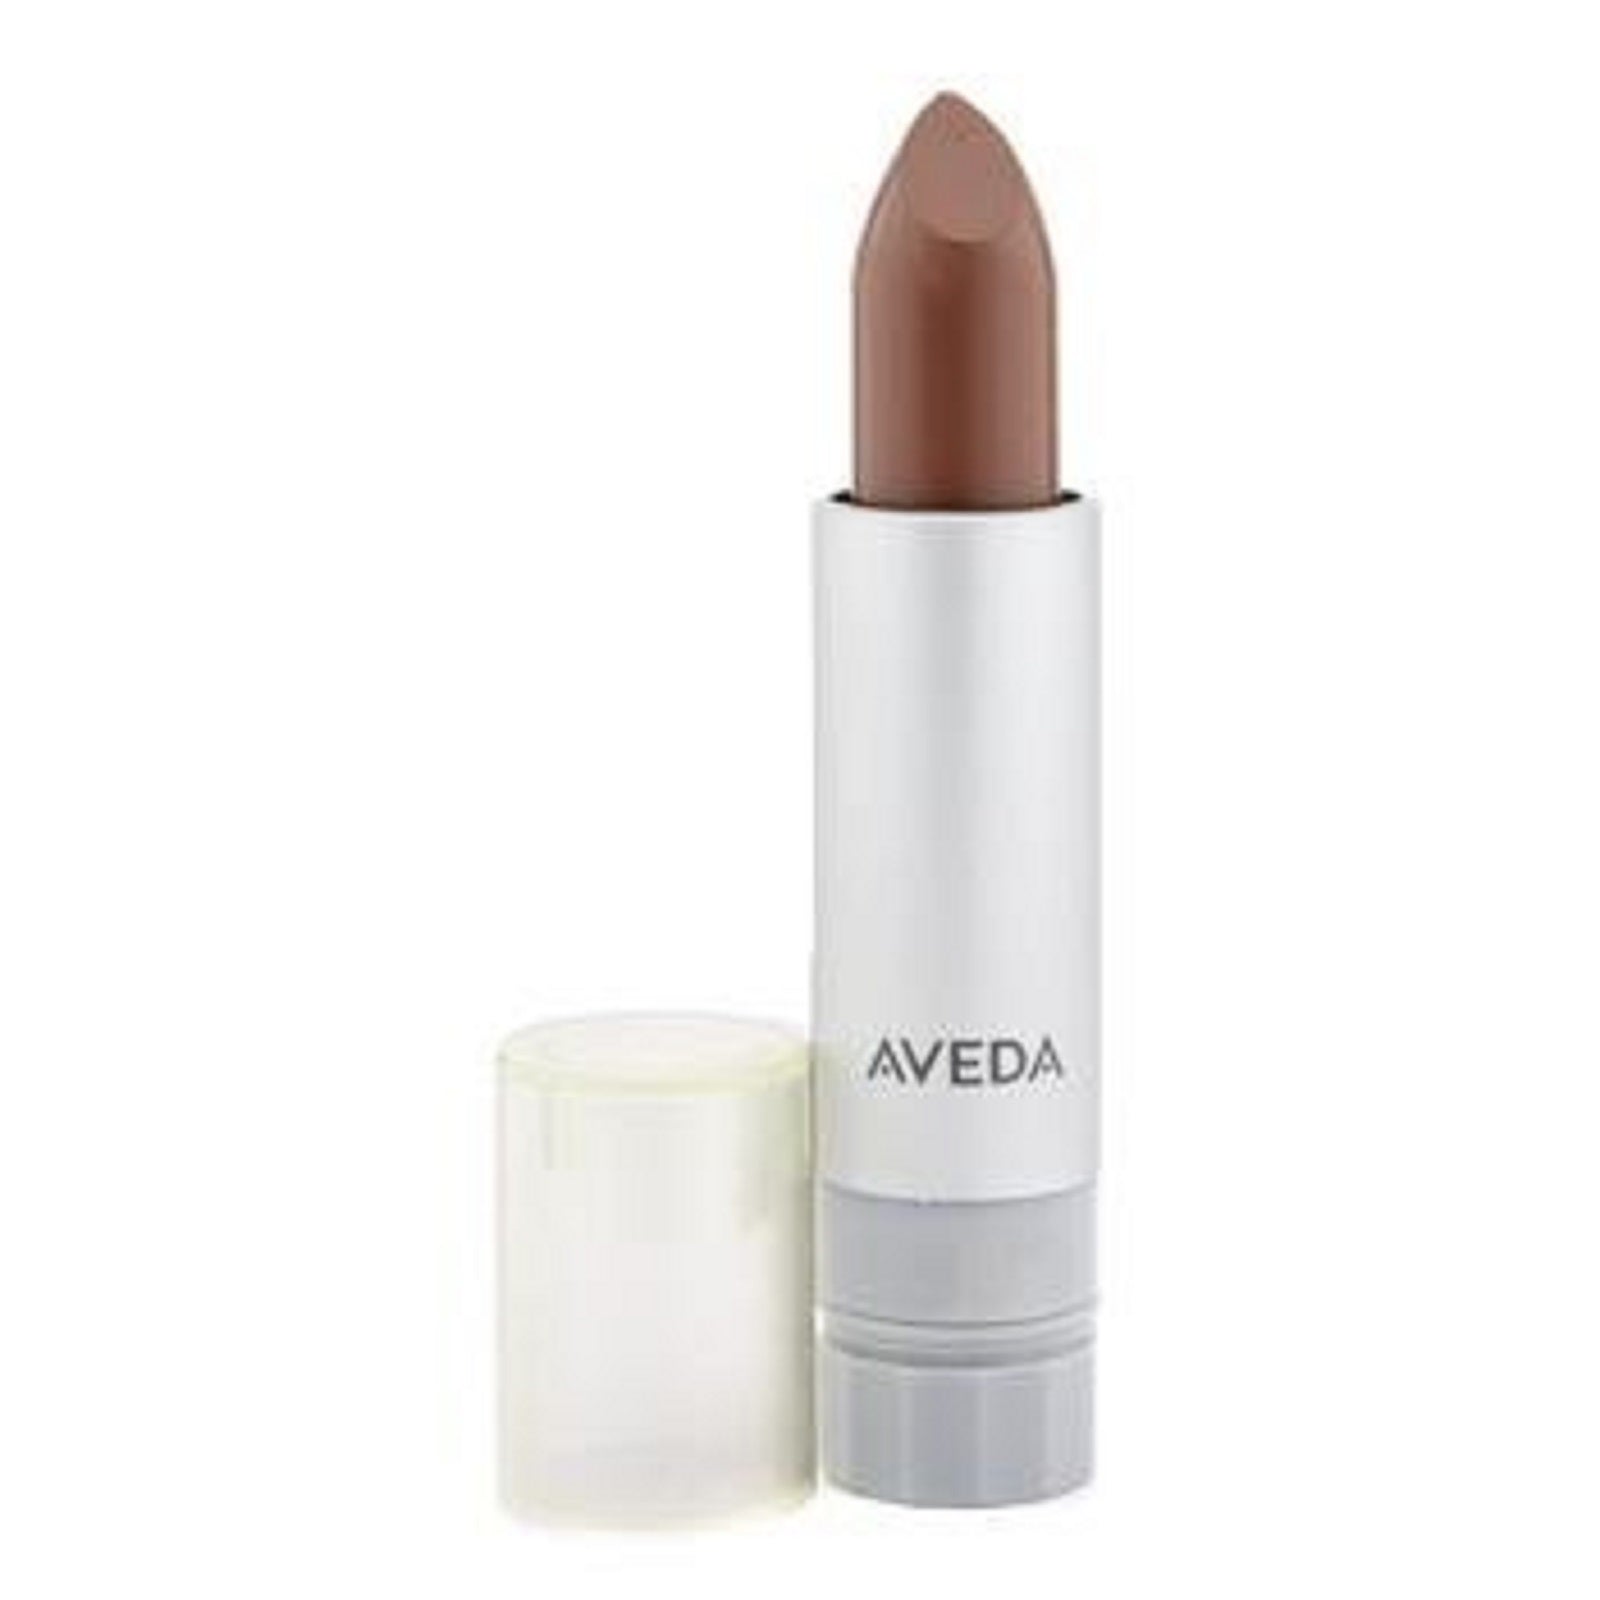 AVEDA new nib lipstick lip color PERSIMMON 831 Nourish-Mint discontinued